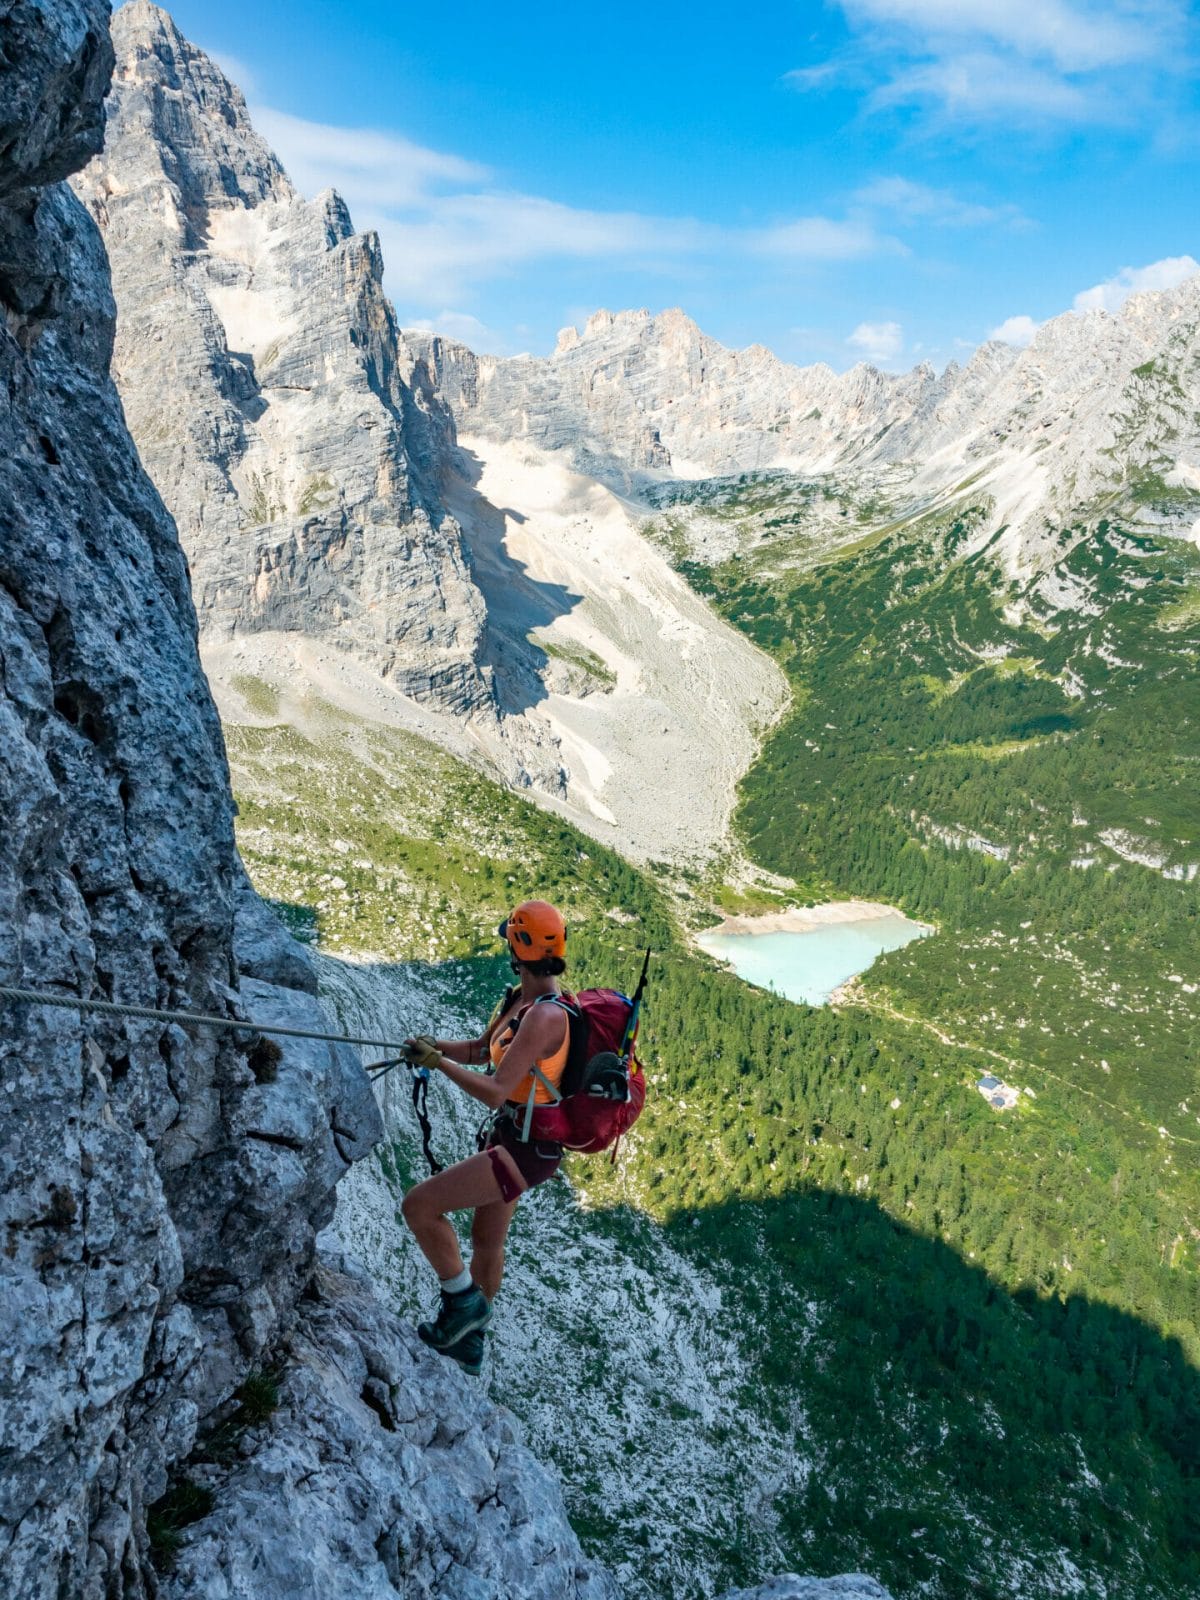 Alta Via 4 Italian Dolomites hiking via ferrata guide